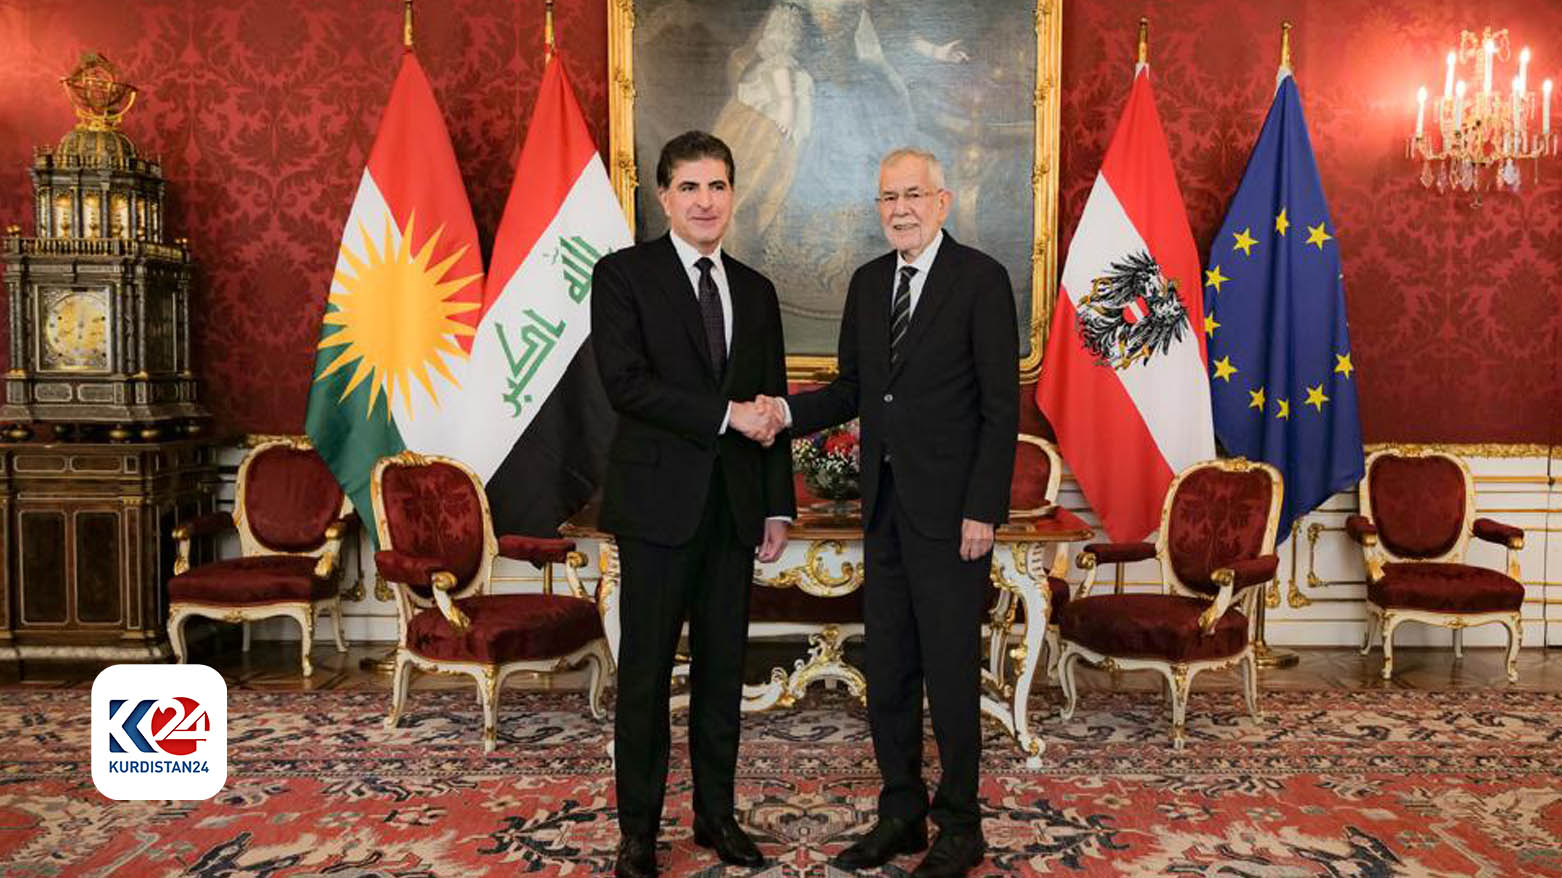 KRG announces Kurdistan Parliament elections date